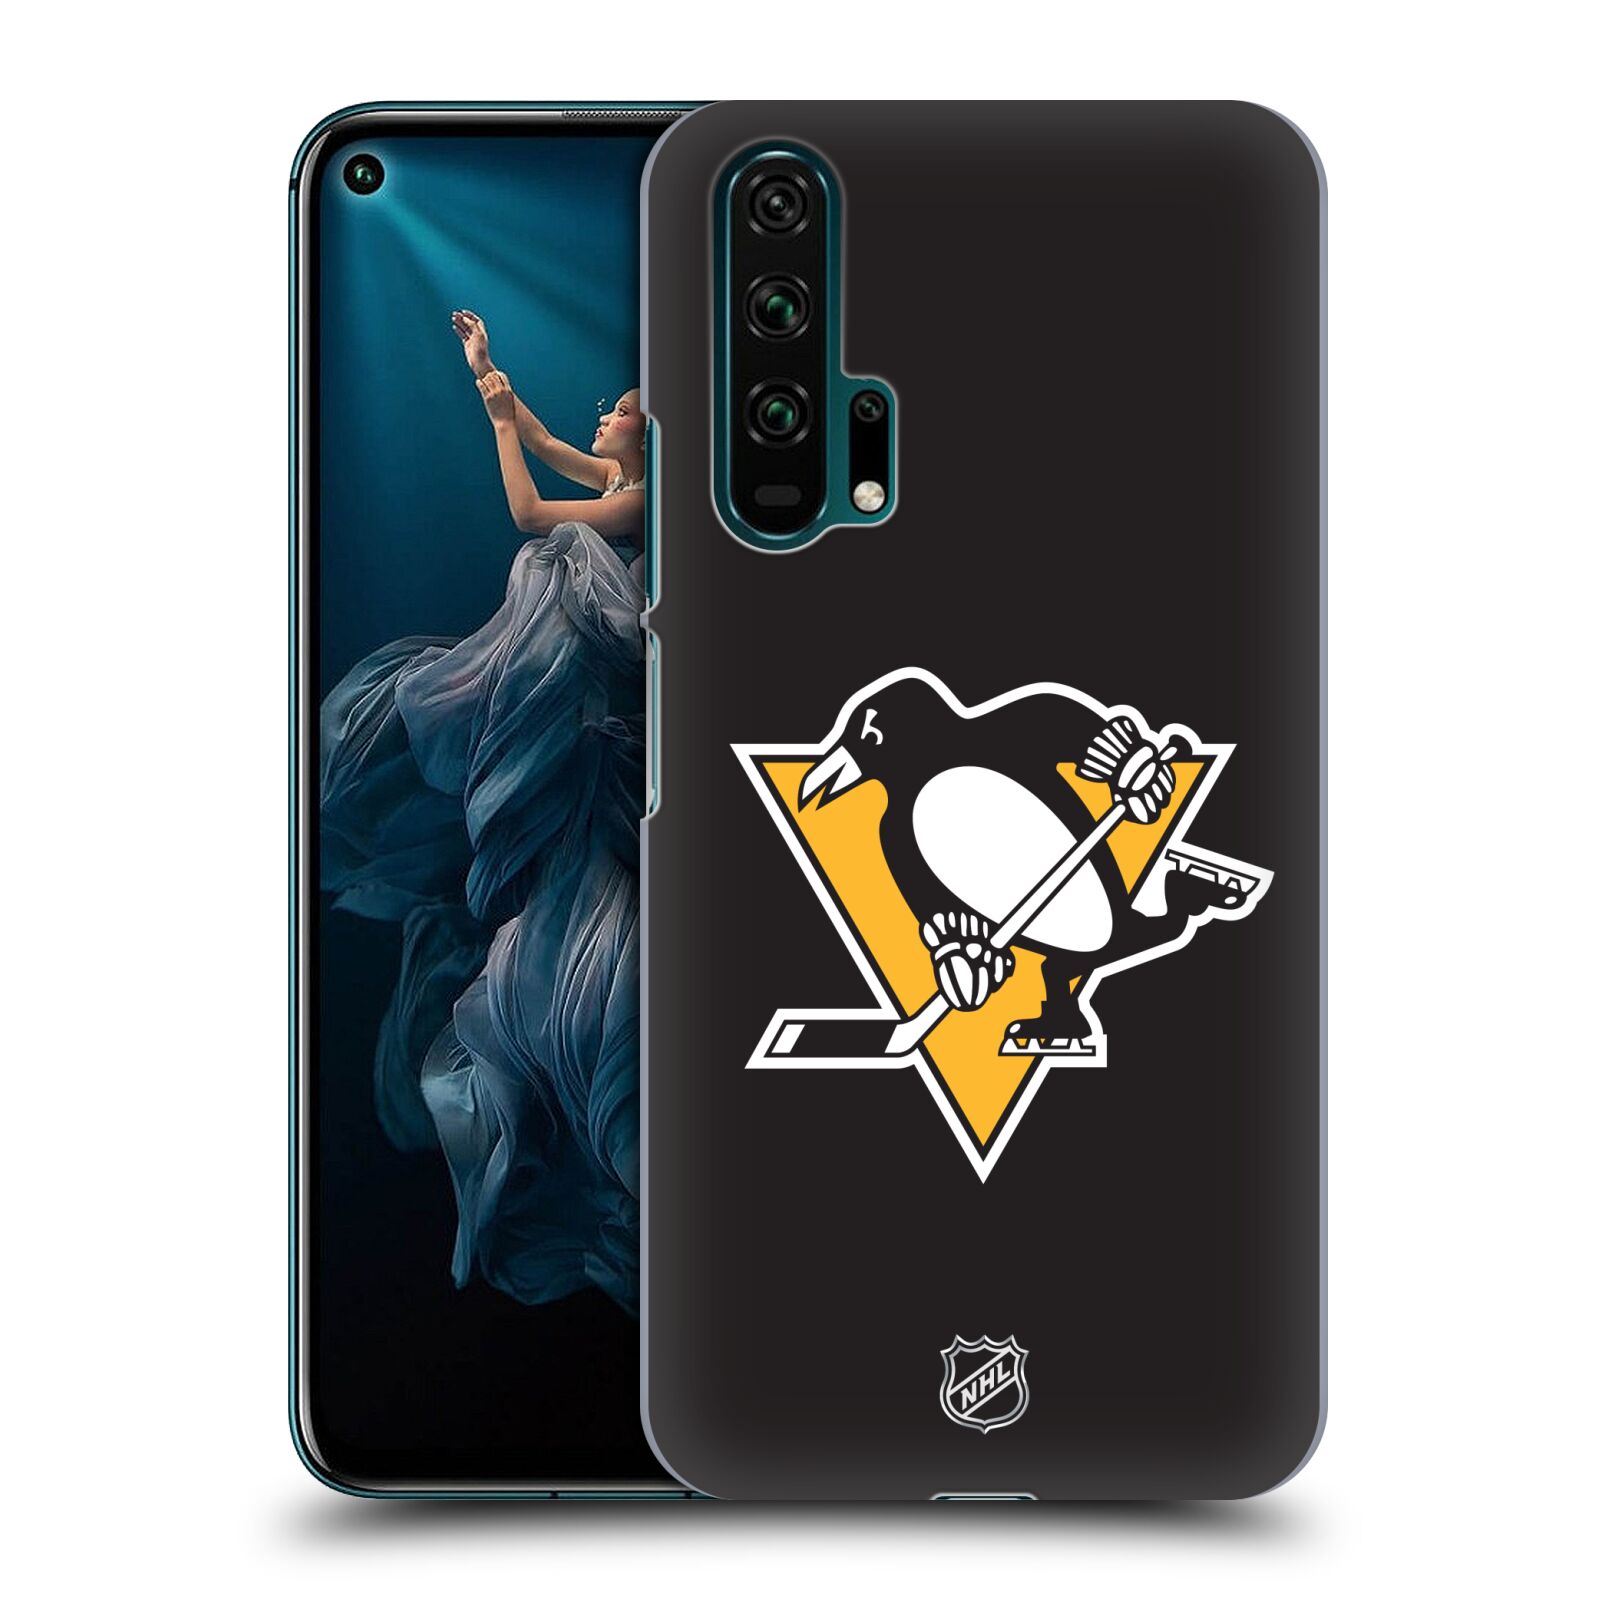 Pouzdro na mobil HONOR 20 PRO - HEAD CASE - Hokej NHL - Pittsburgh Penguins - černé pozadí znak